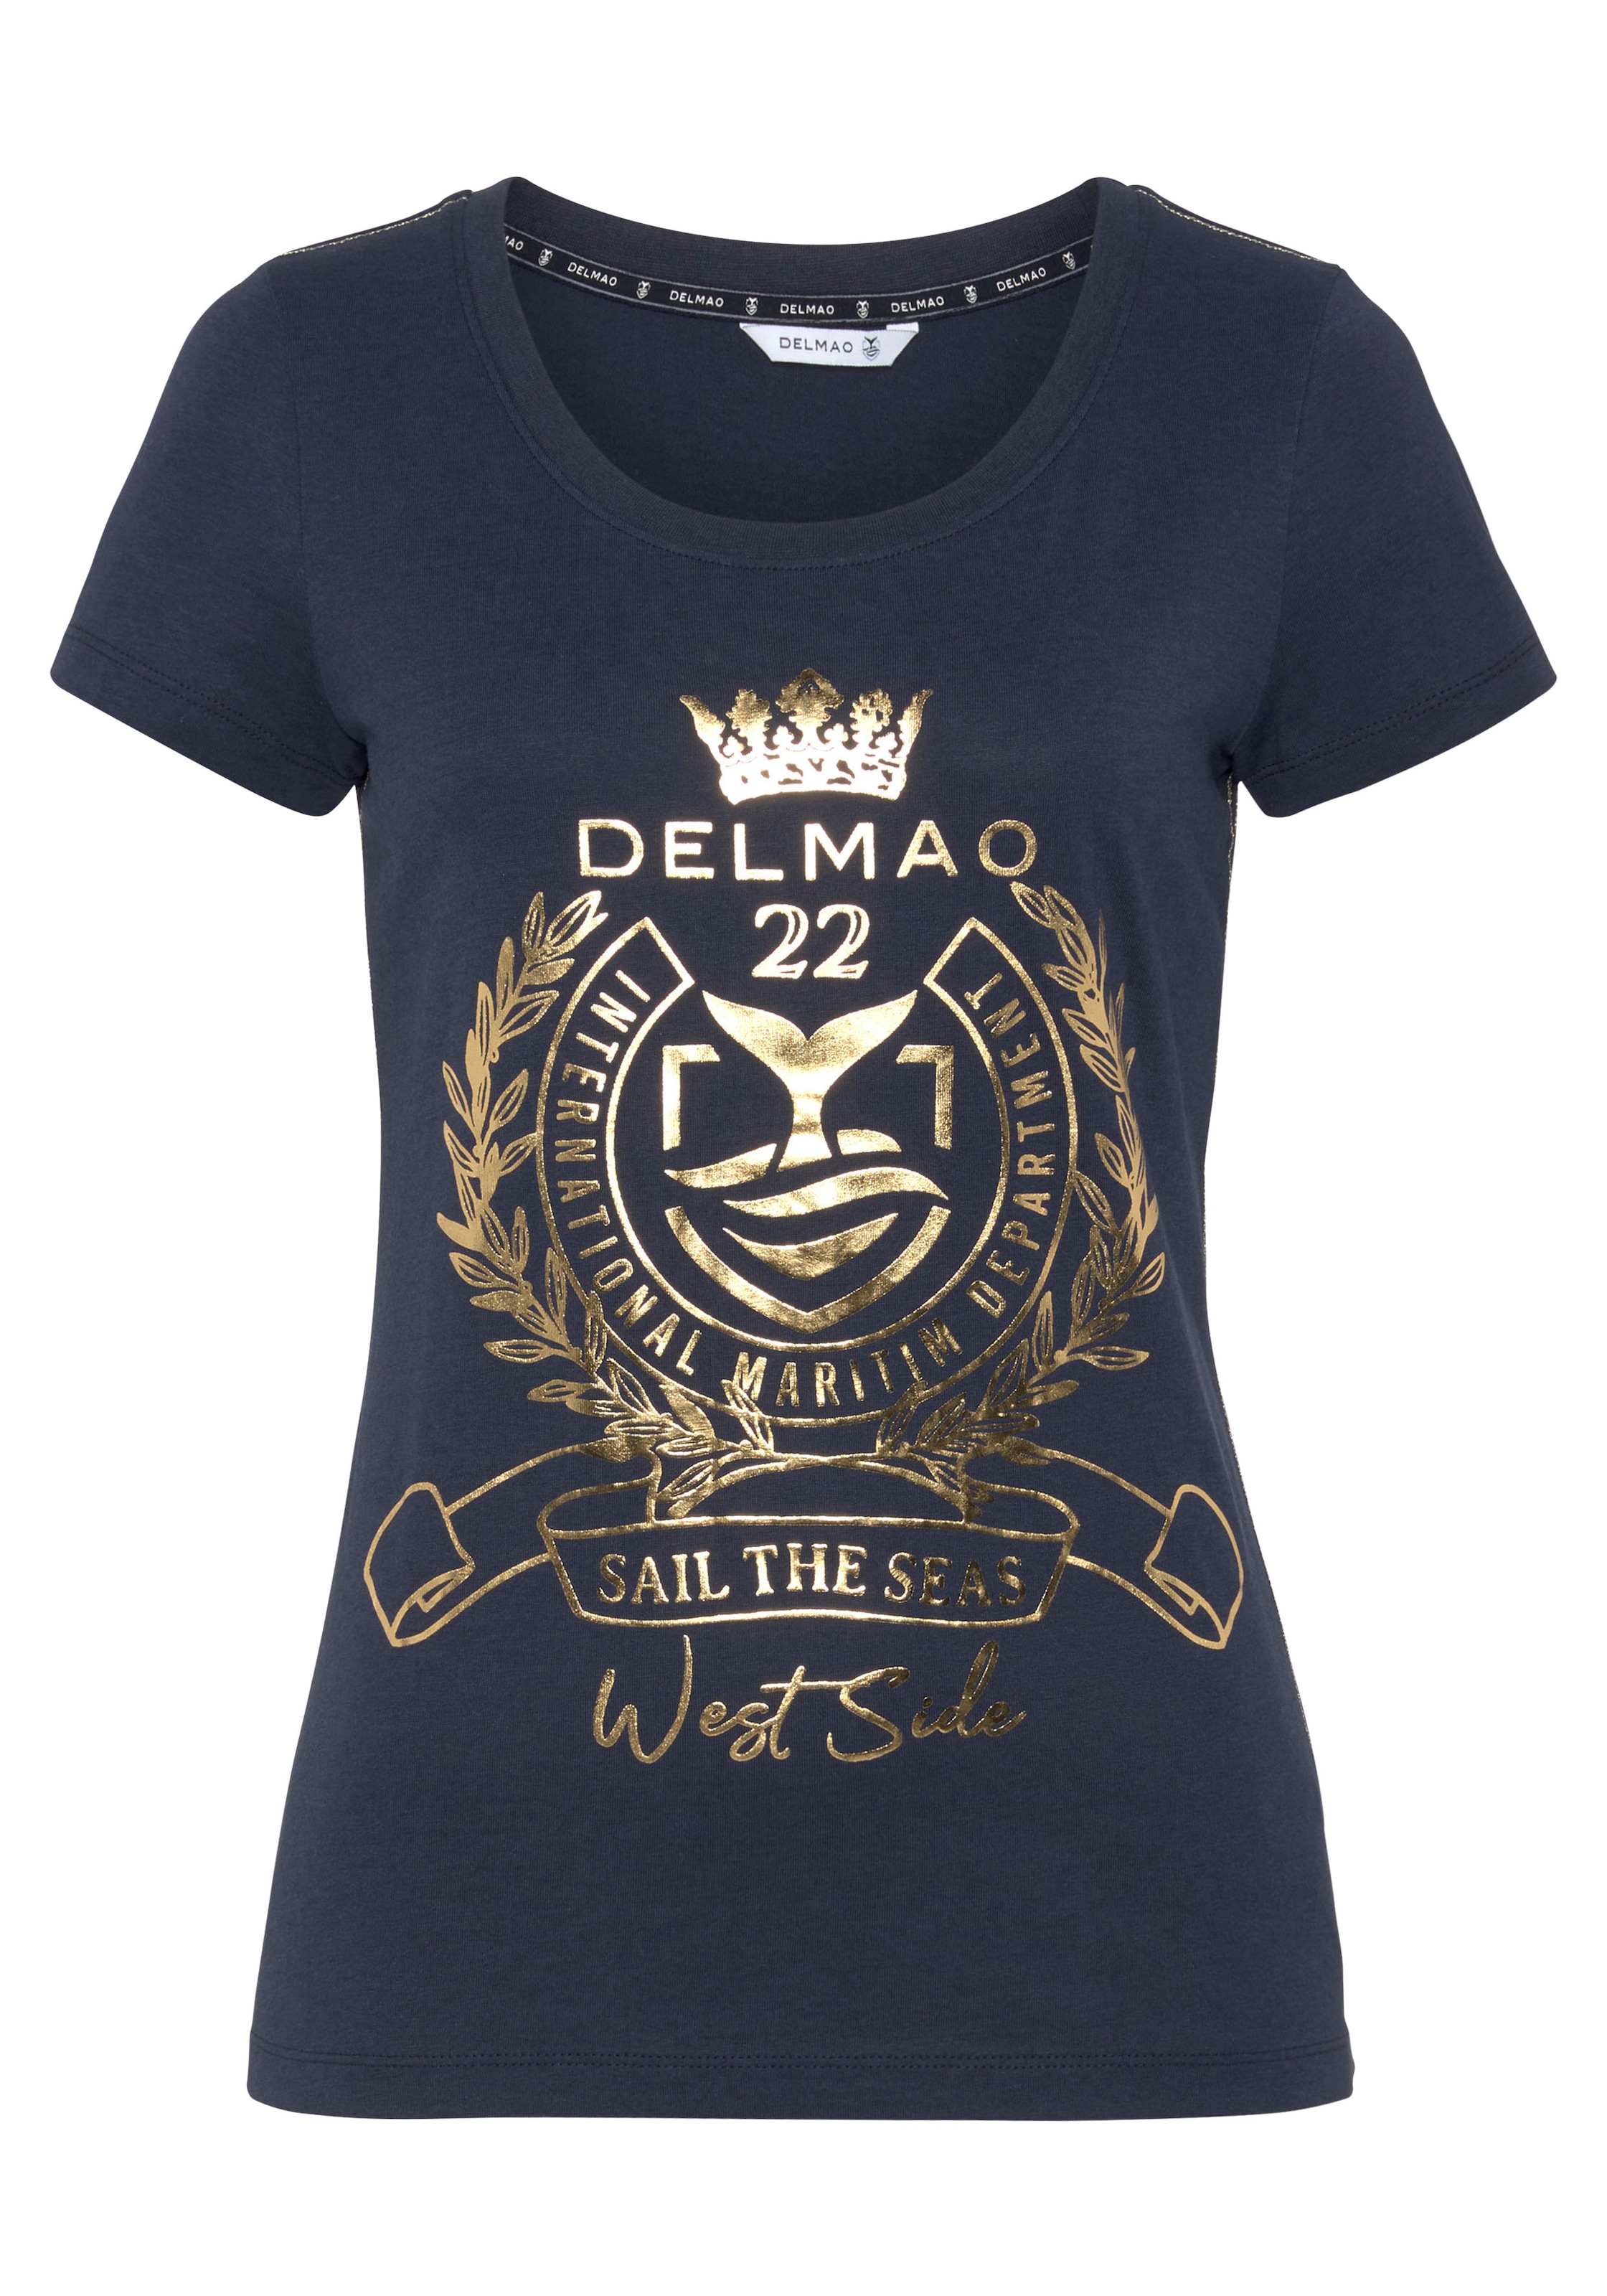 DELMAO T-Shirt, ♕ Folienprint NEUE MARKE! bei mit - hochwertigem, goldfarbenem